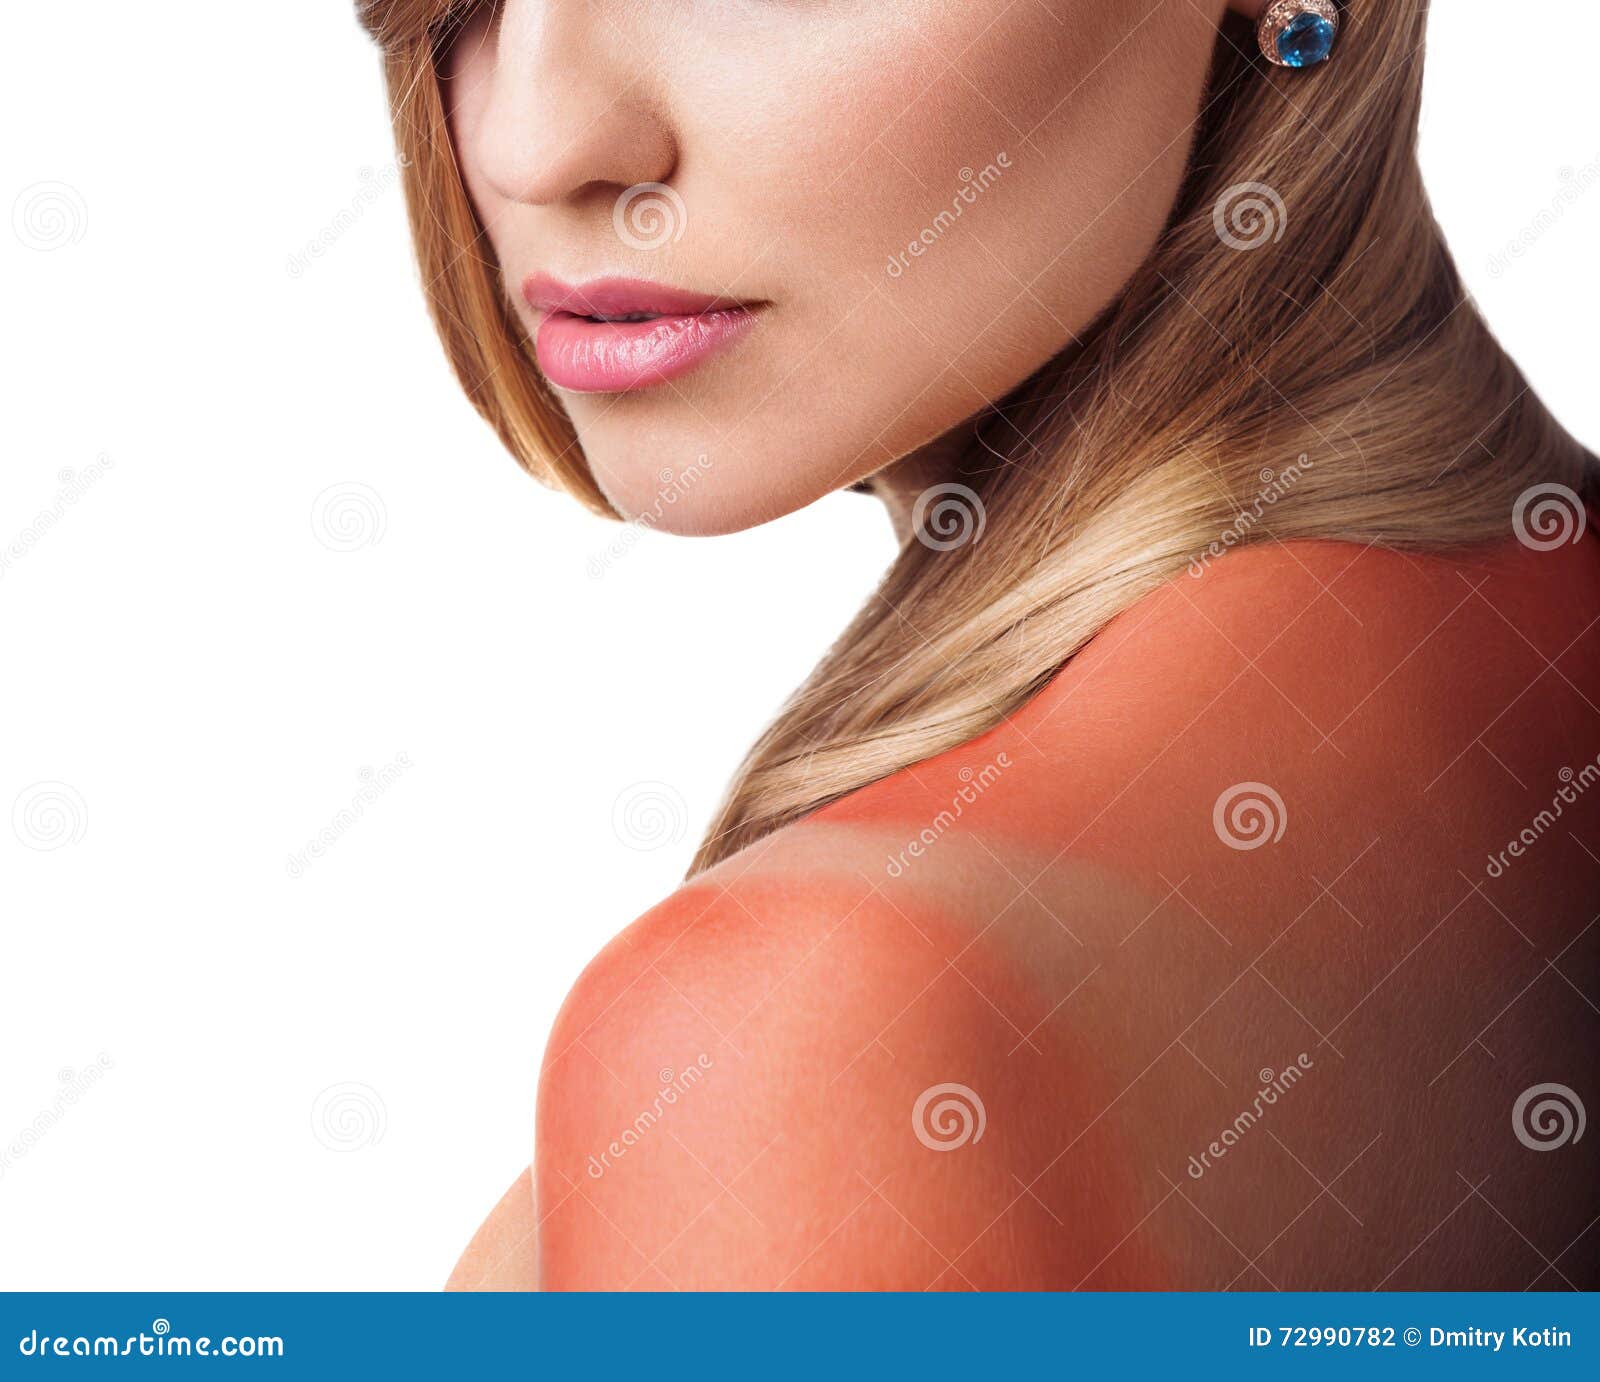 sunburn female shoulder